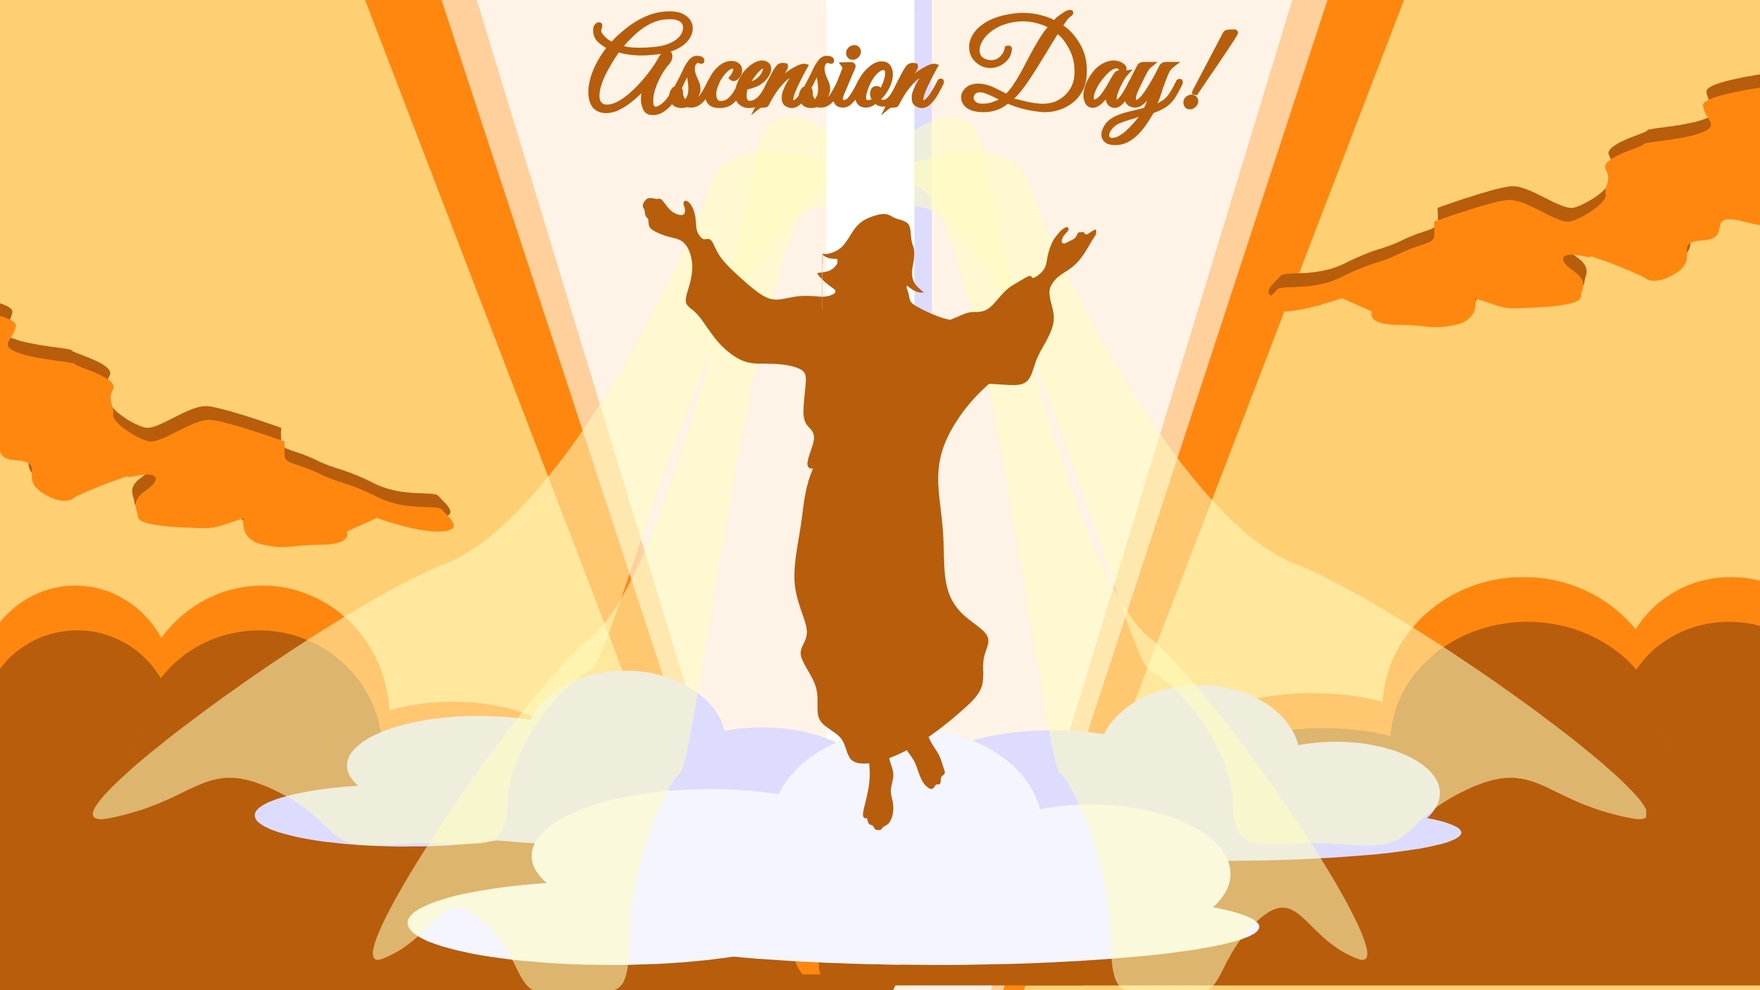 Ascension Day Design Background in PDF, Illustrator, PSD, EPS, SVG, JPG, PNG